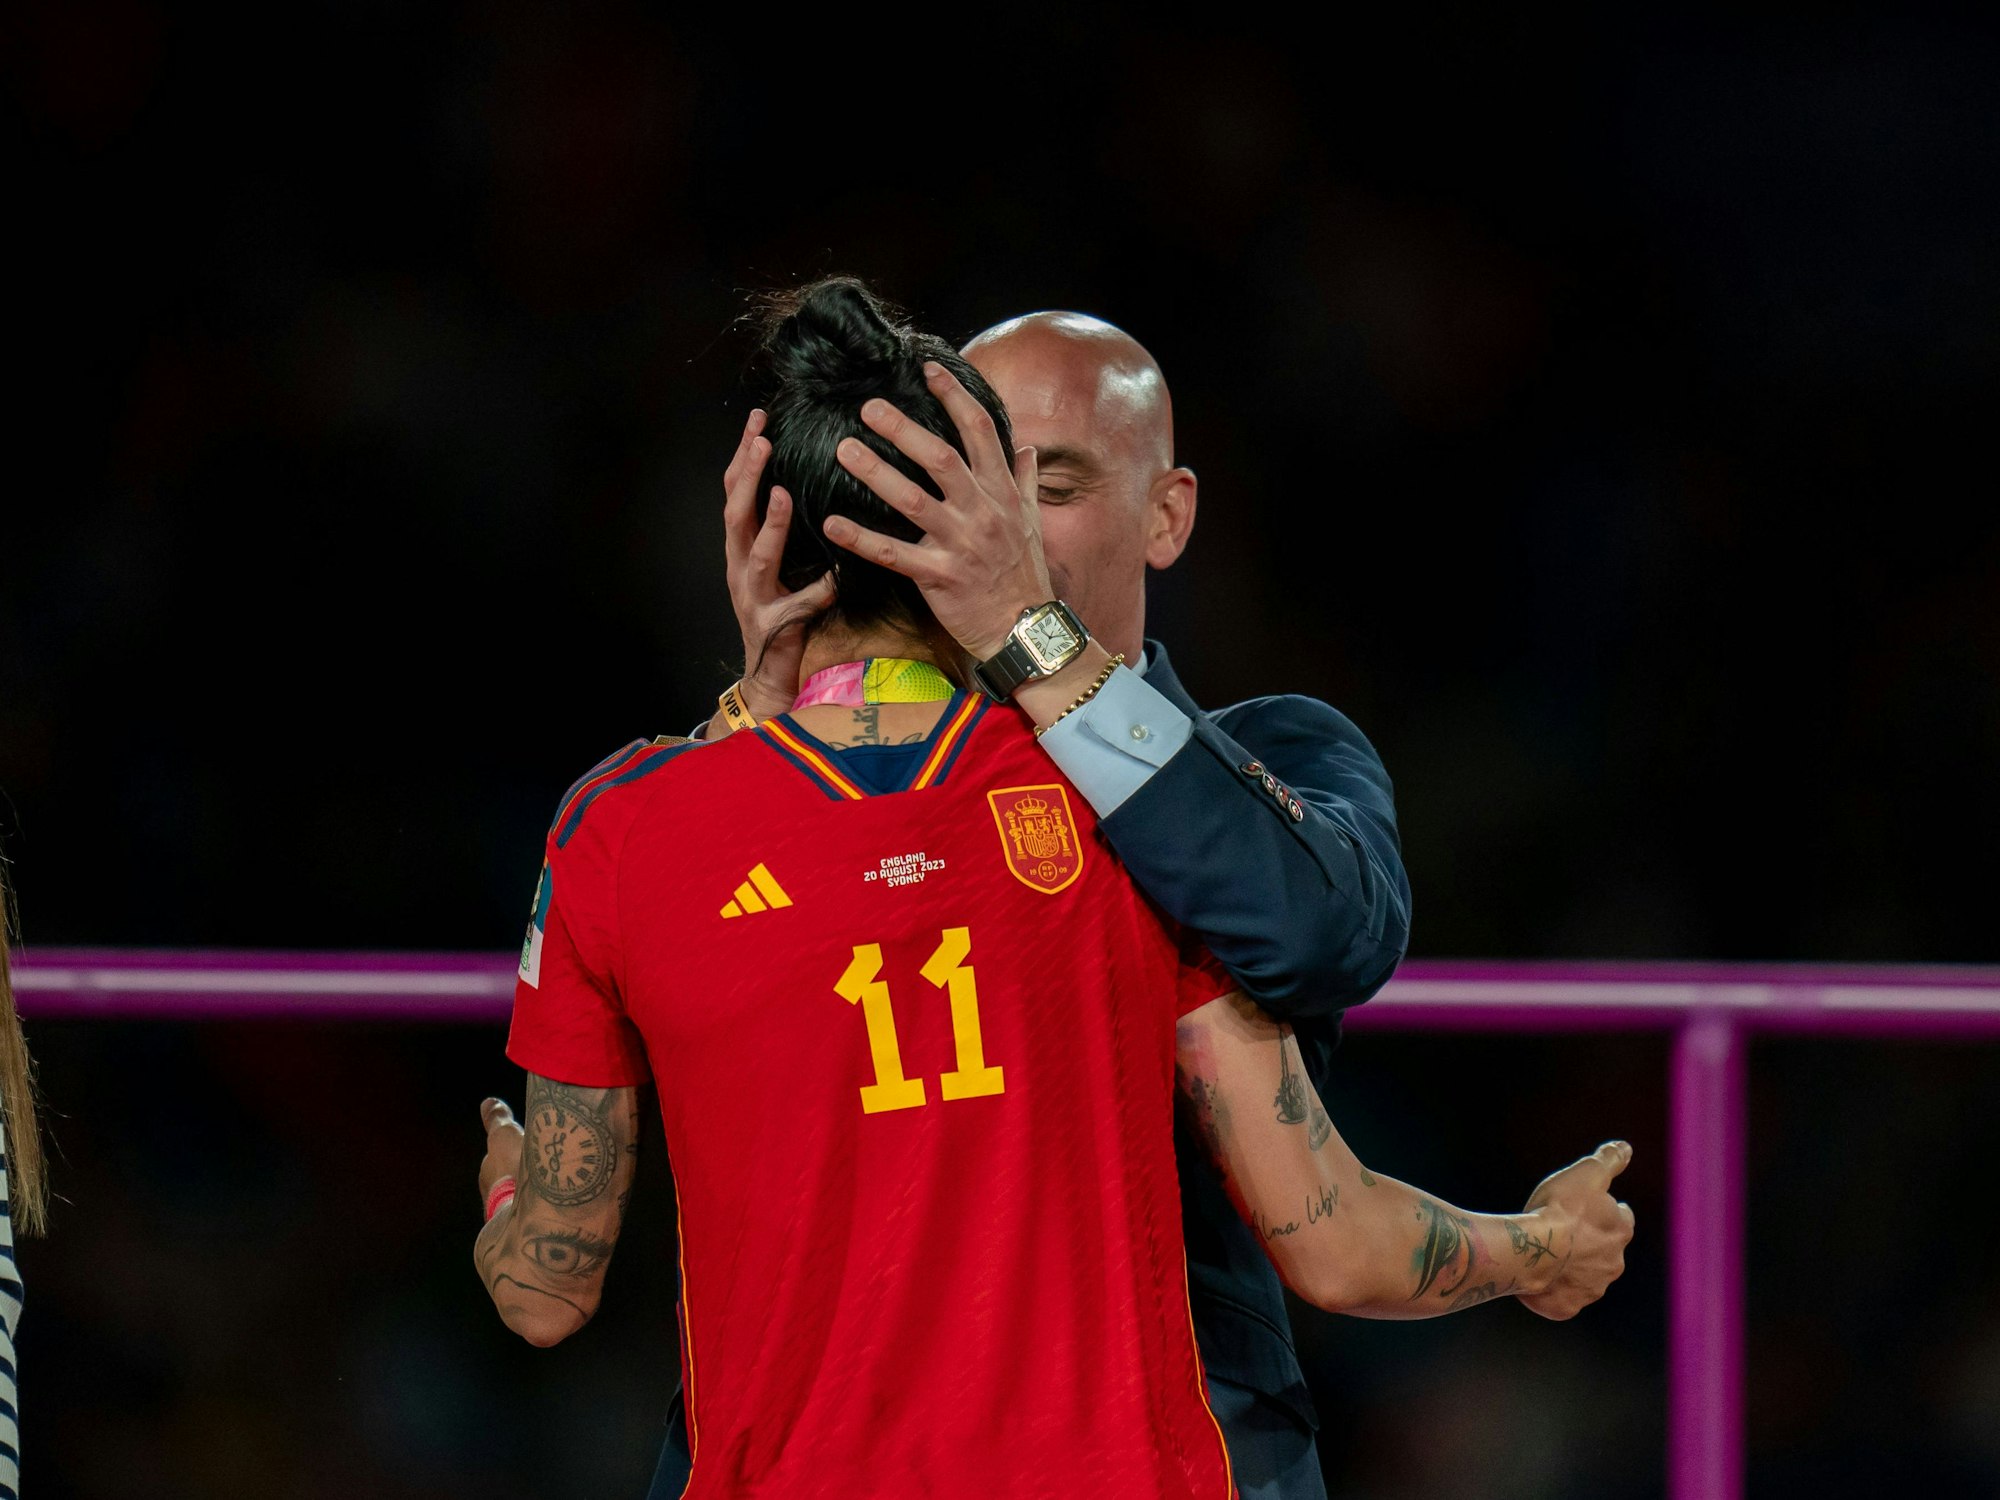 Spaniens Verbandschef Luis Rubiales küsst Spaniens Spielerin Jennifer Hermoso auf dn Mund. Das Bild entstand am 20. August 2023 in Sydney.